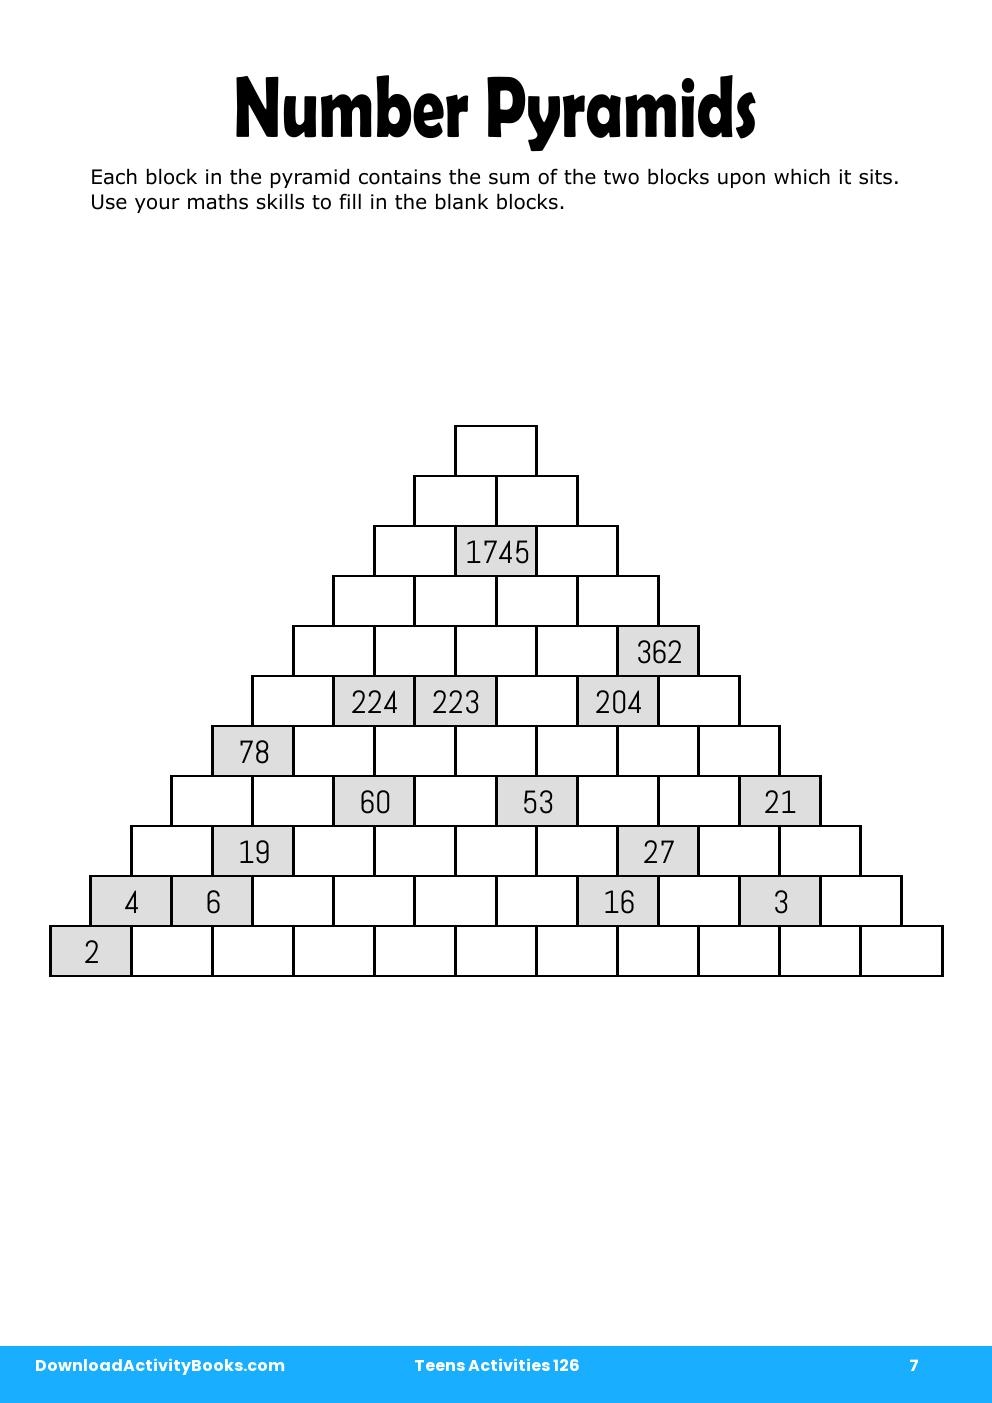 Number Pyramids in Teens Activities 126